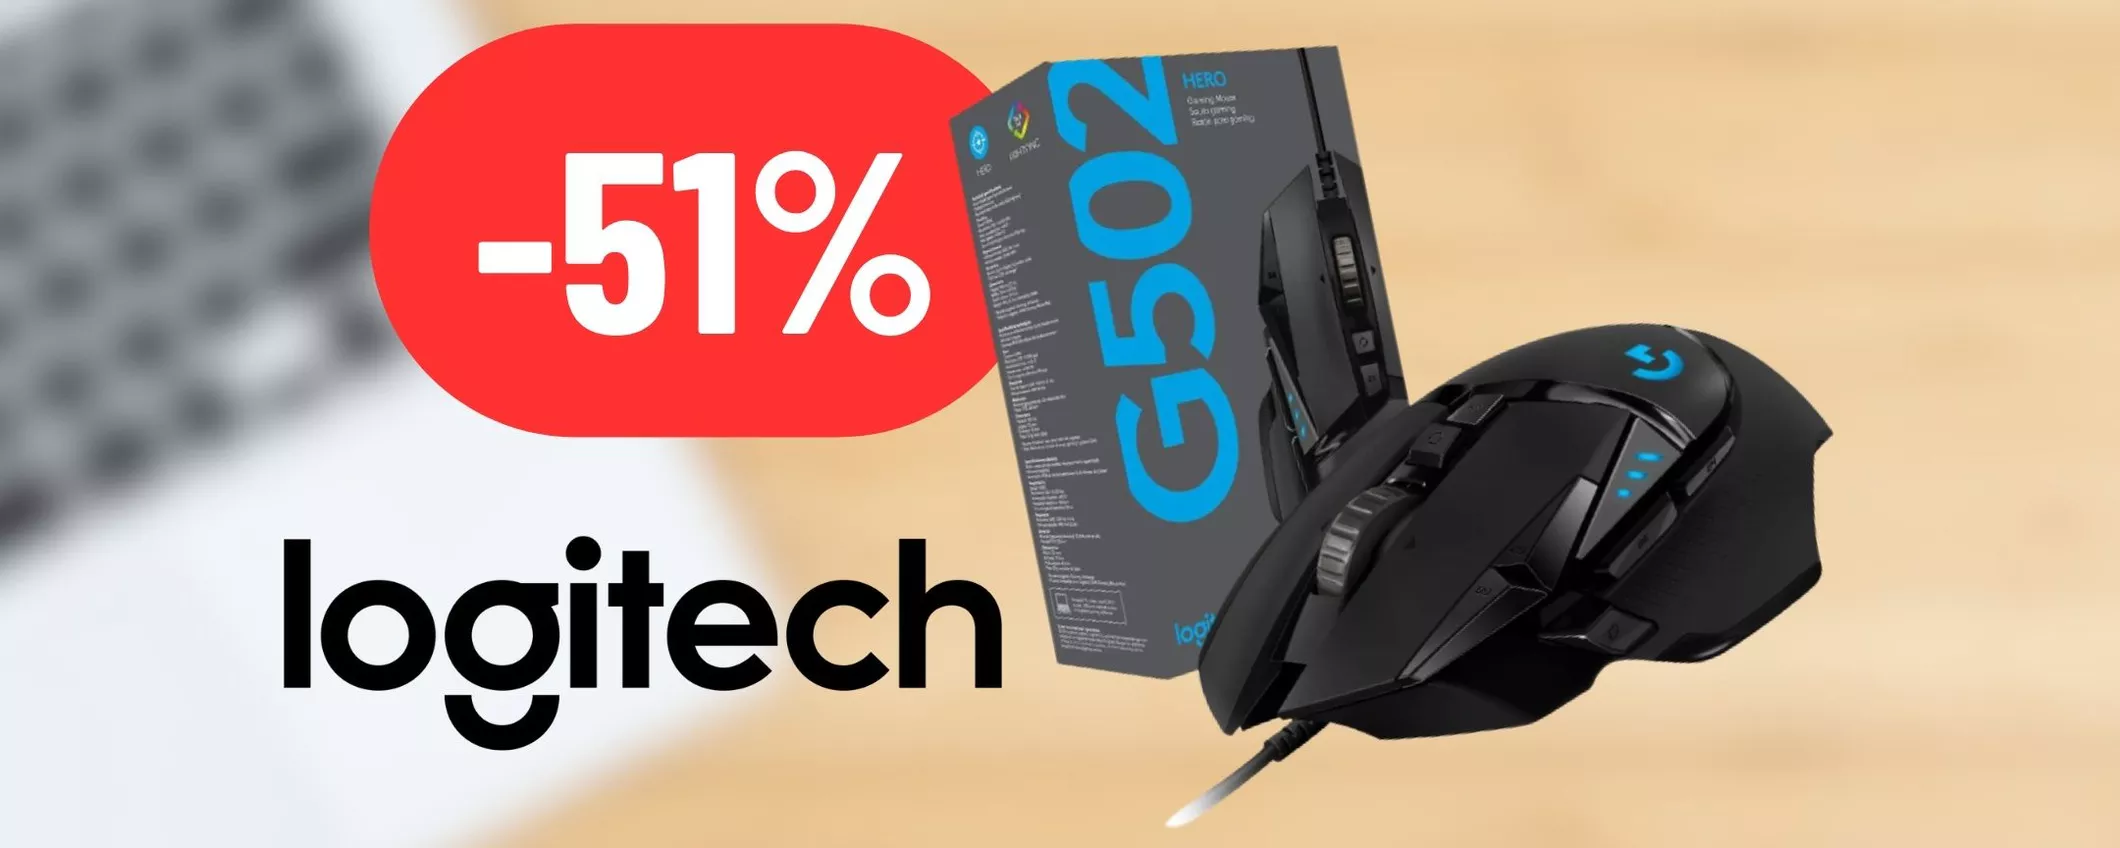 Sarà sempre HEADSHOT con il mouse da gaming Logitech al 51% di sconto